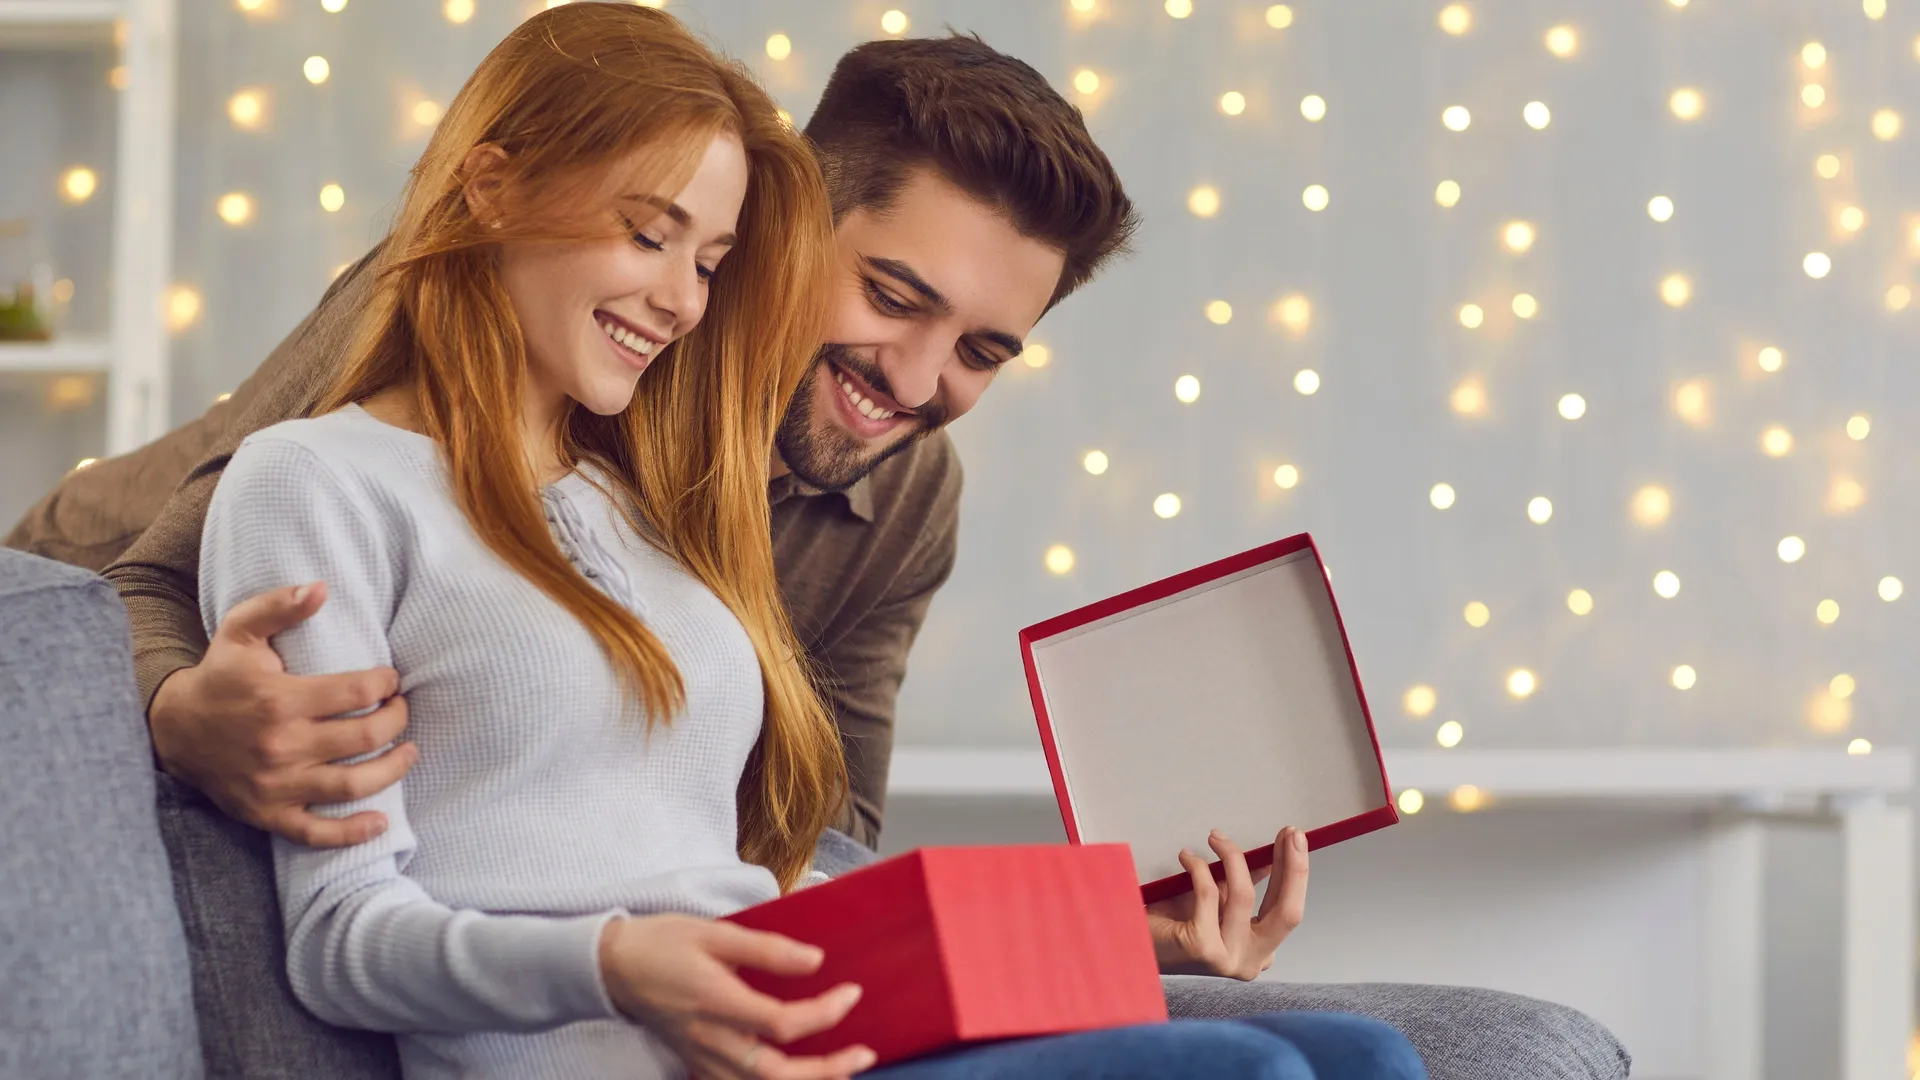 Большинству опрошенных — и мужчин, и женщин — было бы приятнее получать подарки лично. Фото: Studio Romantic / Shutterstock.com